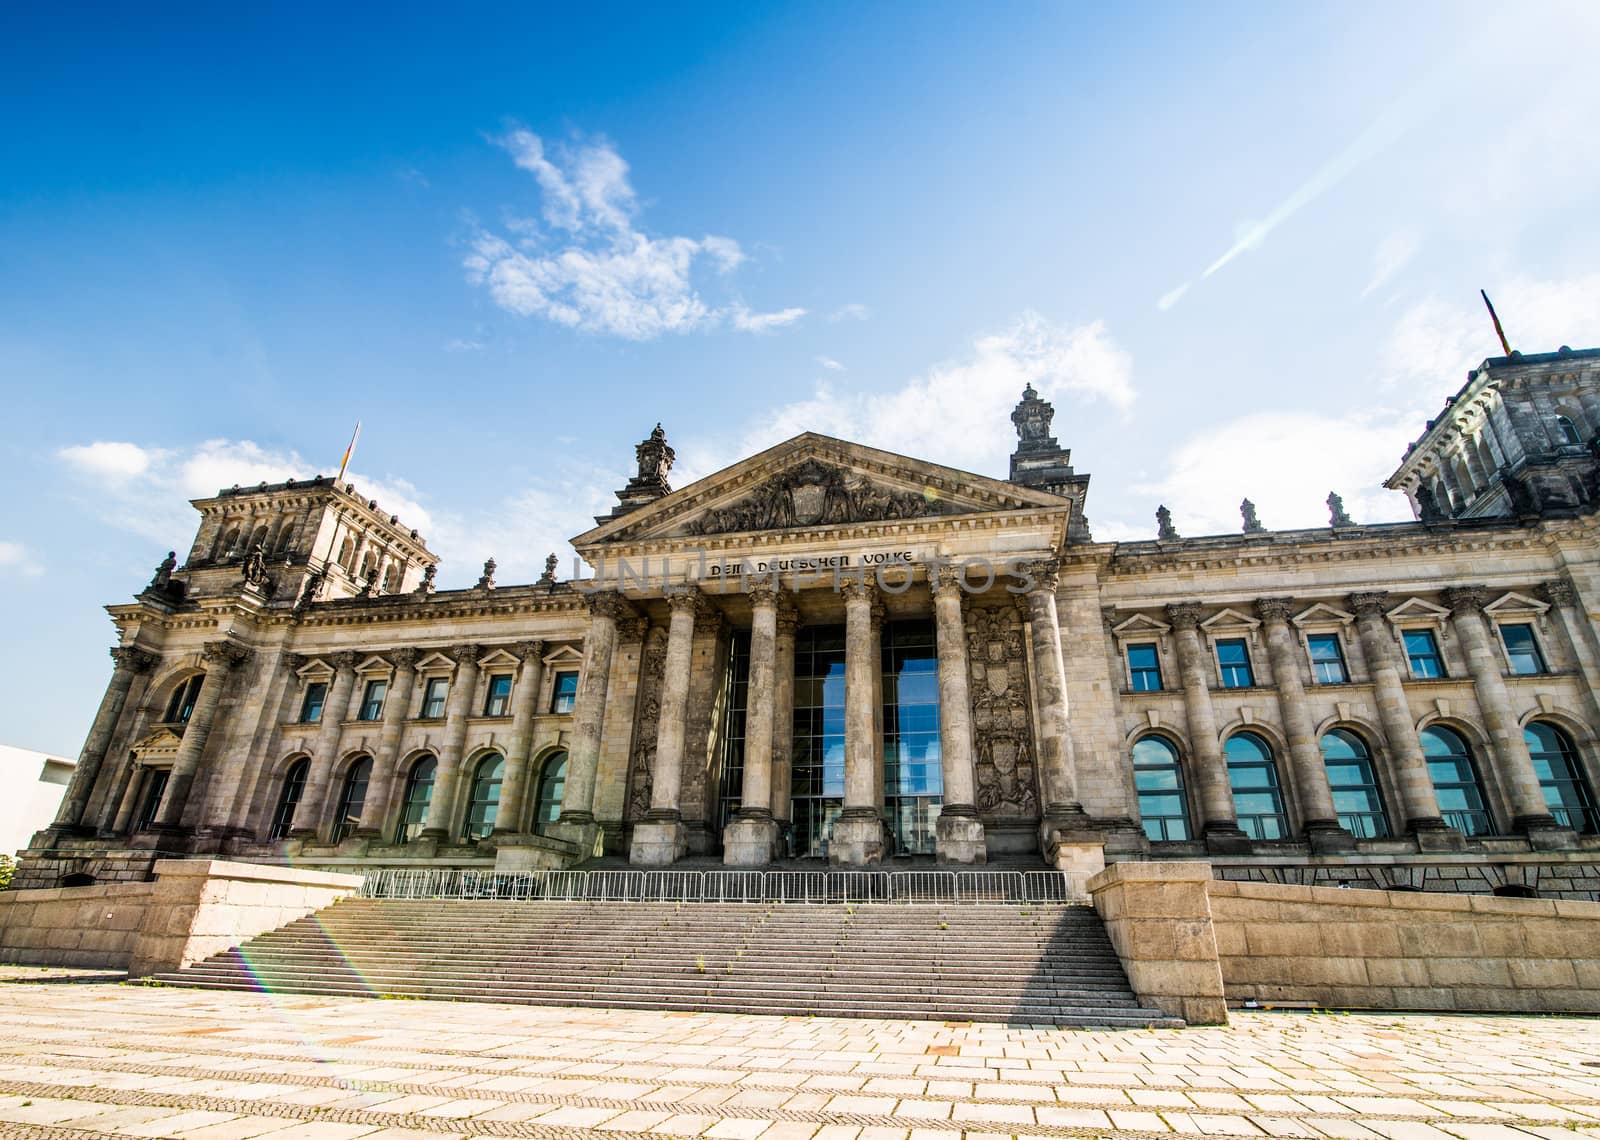 Bundestag in Berlin, Germany by GekaSkr